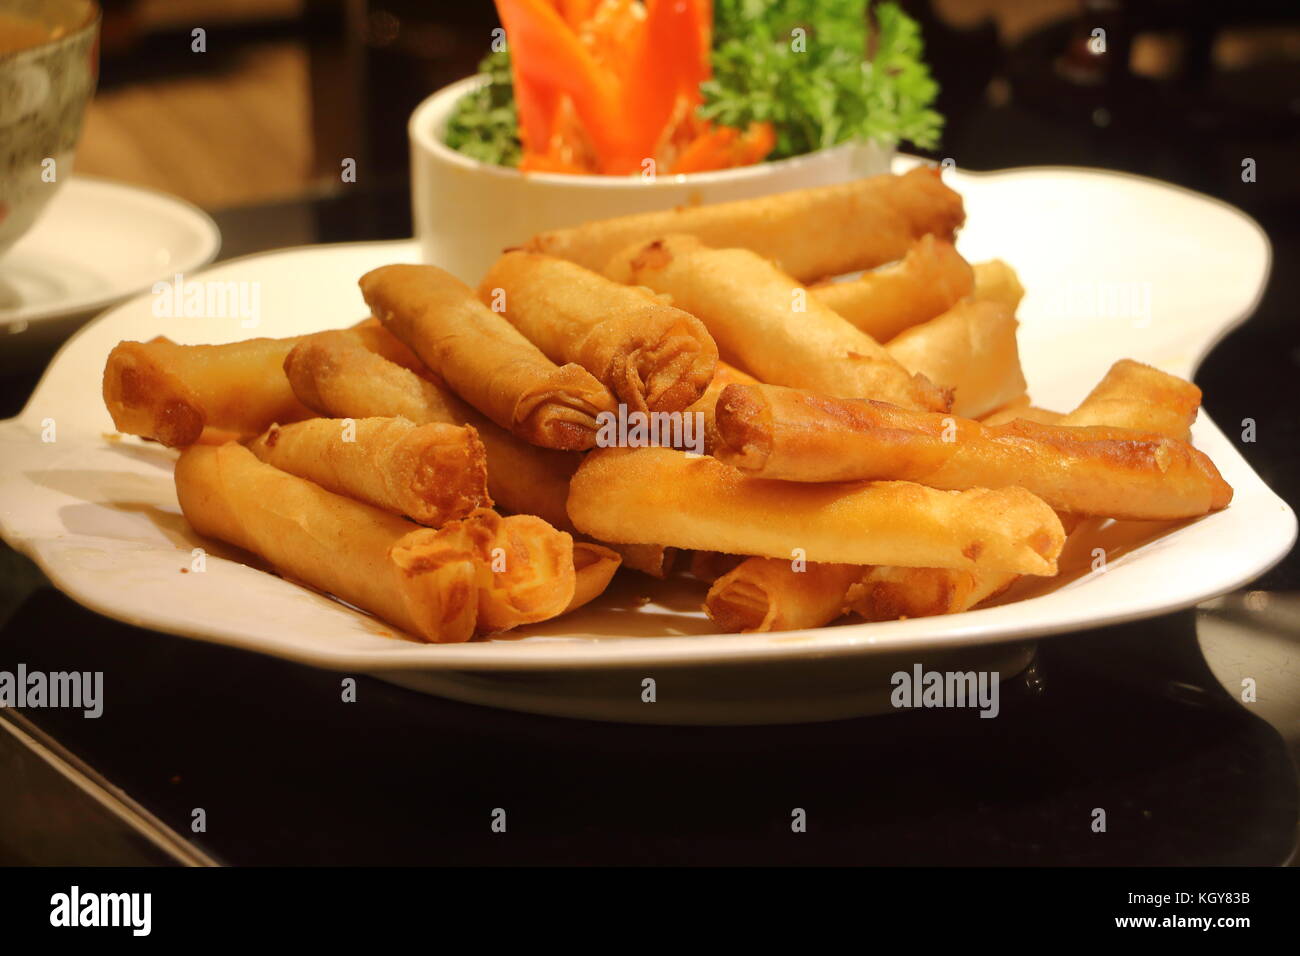 Asiatische Frühlingsrolle mit Käse oder gemahlenem Fleisch im Inneren und in Öl auf einem weißen Teller gebraten mit Salatgarnitur in einem Restaurant angezeigt. Stockfoto